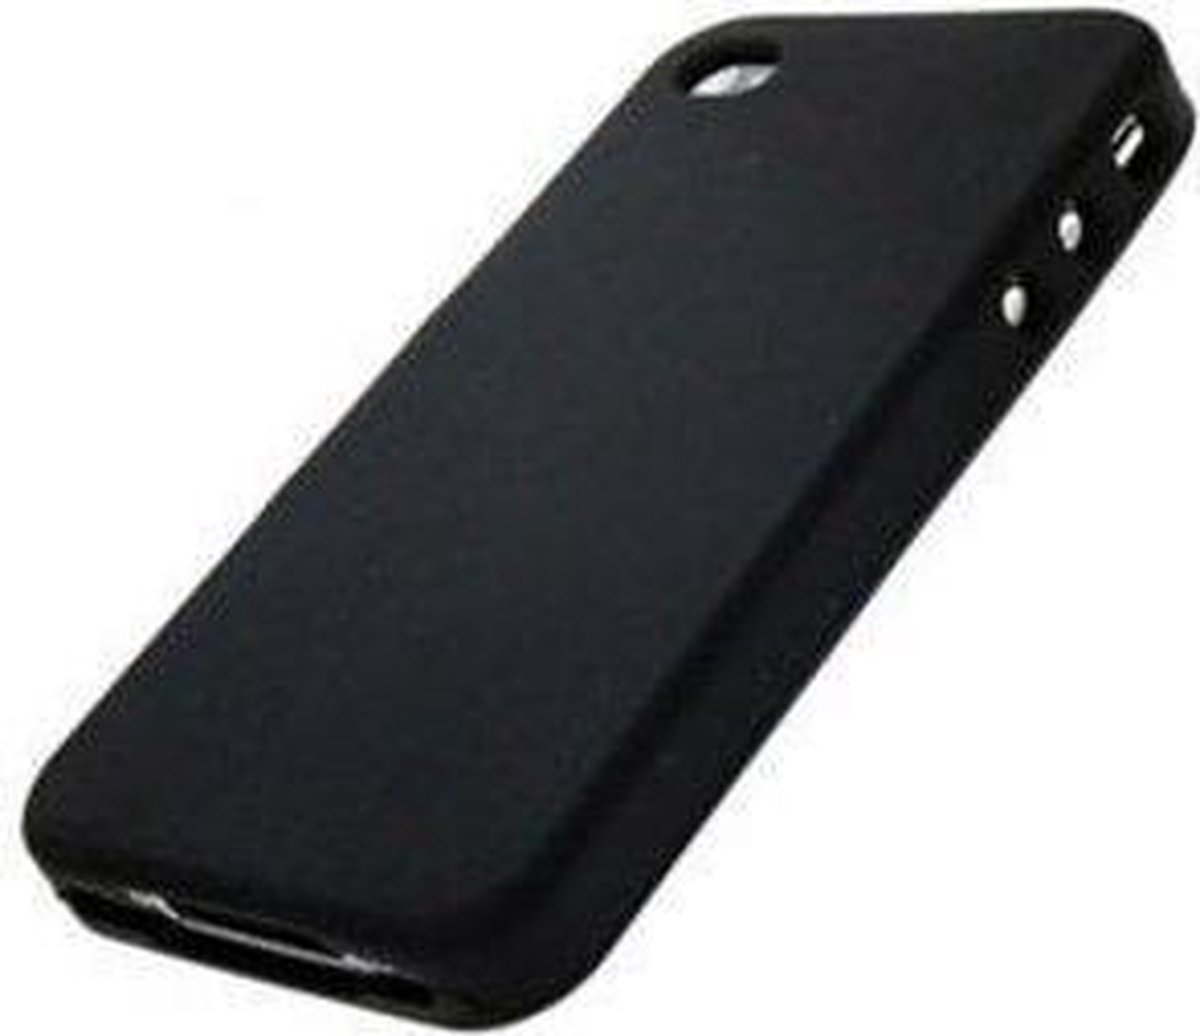 Flexibel siliconen hoesje Apple iPhone 4 / 4S - Siliconen case cover kleur zwart - Merk Westerhuis & van Andel huismerk